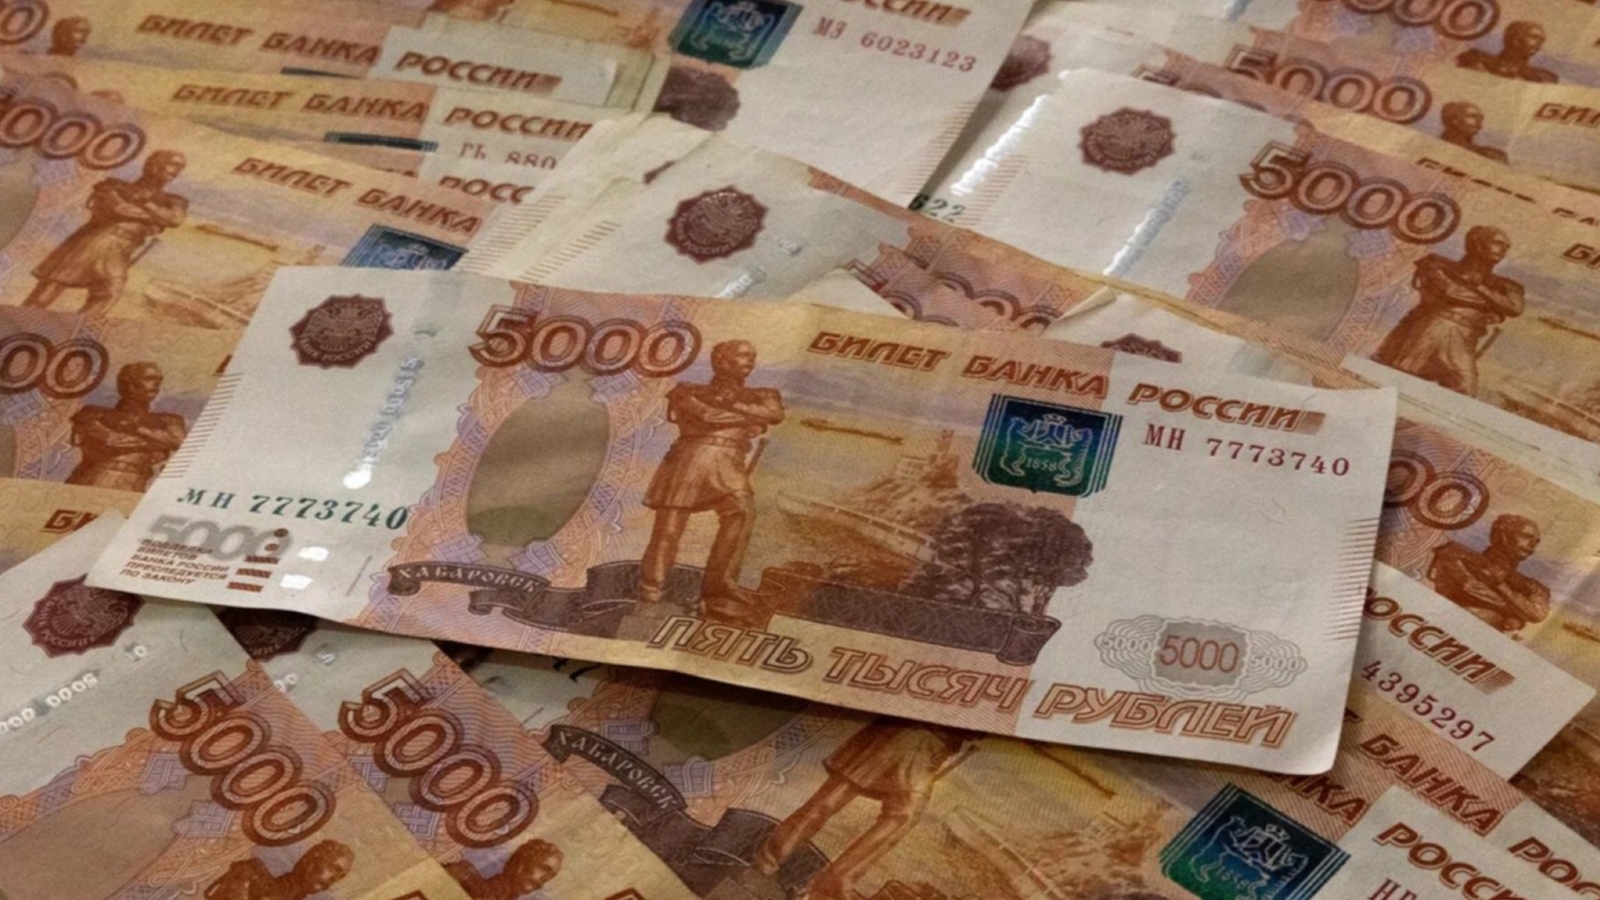 Желание разбогатеть привело жителя Мурманска к миллионным кредитам